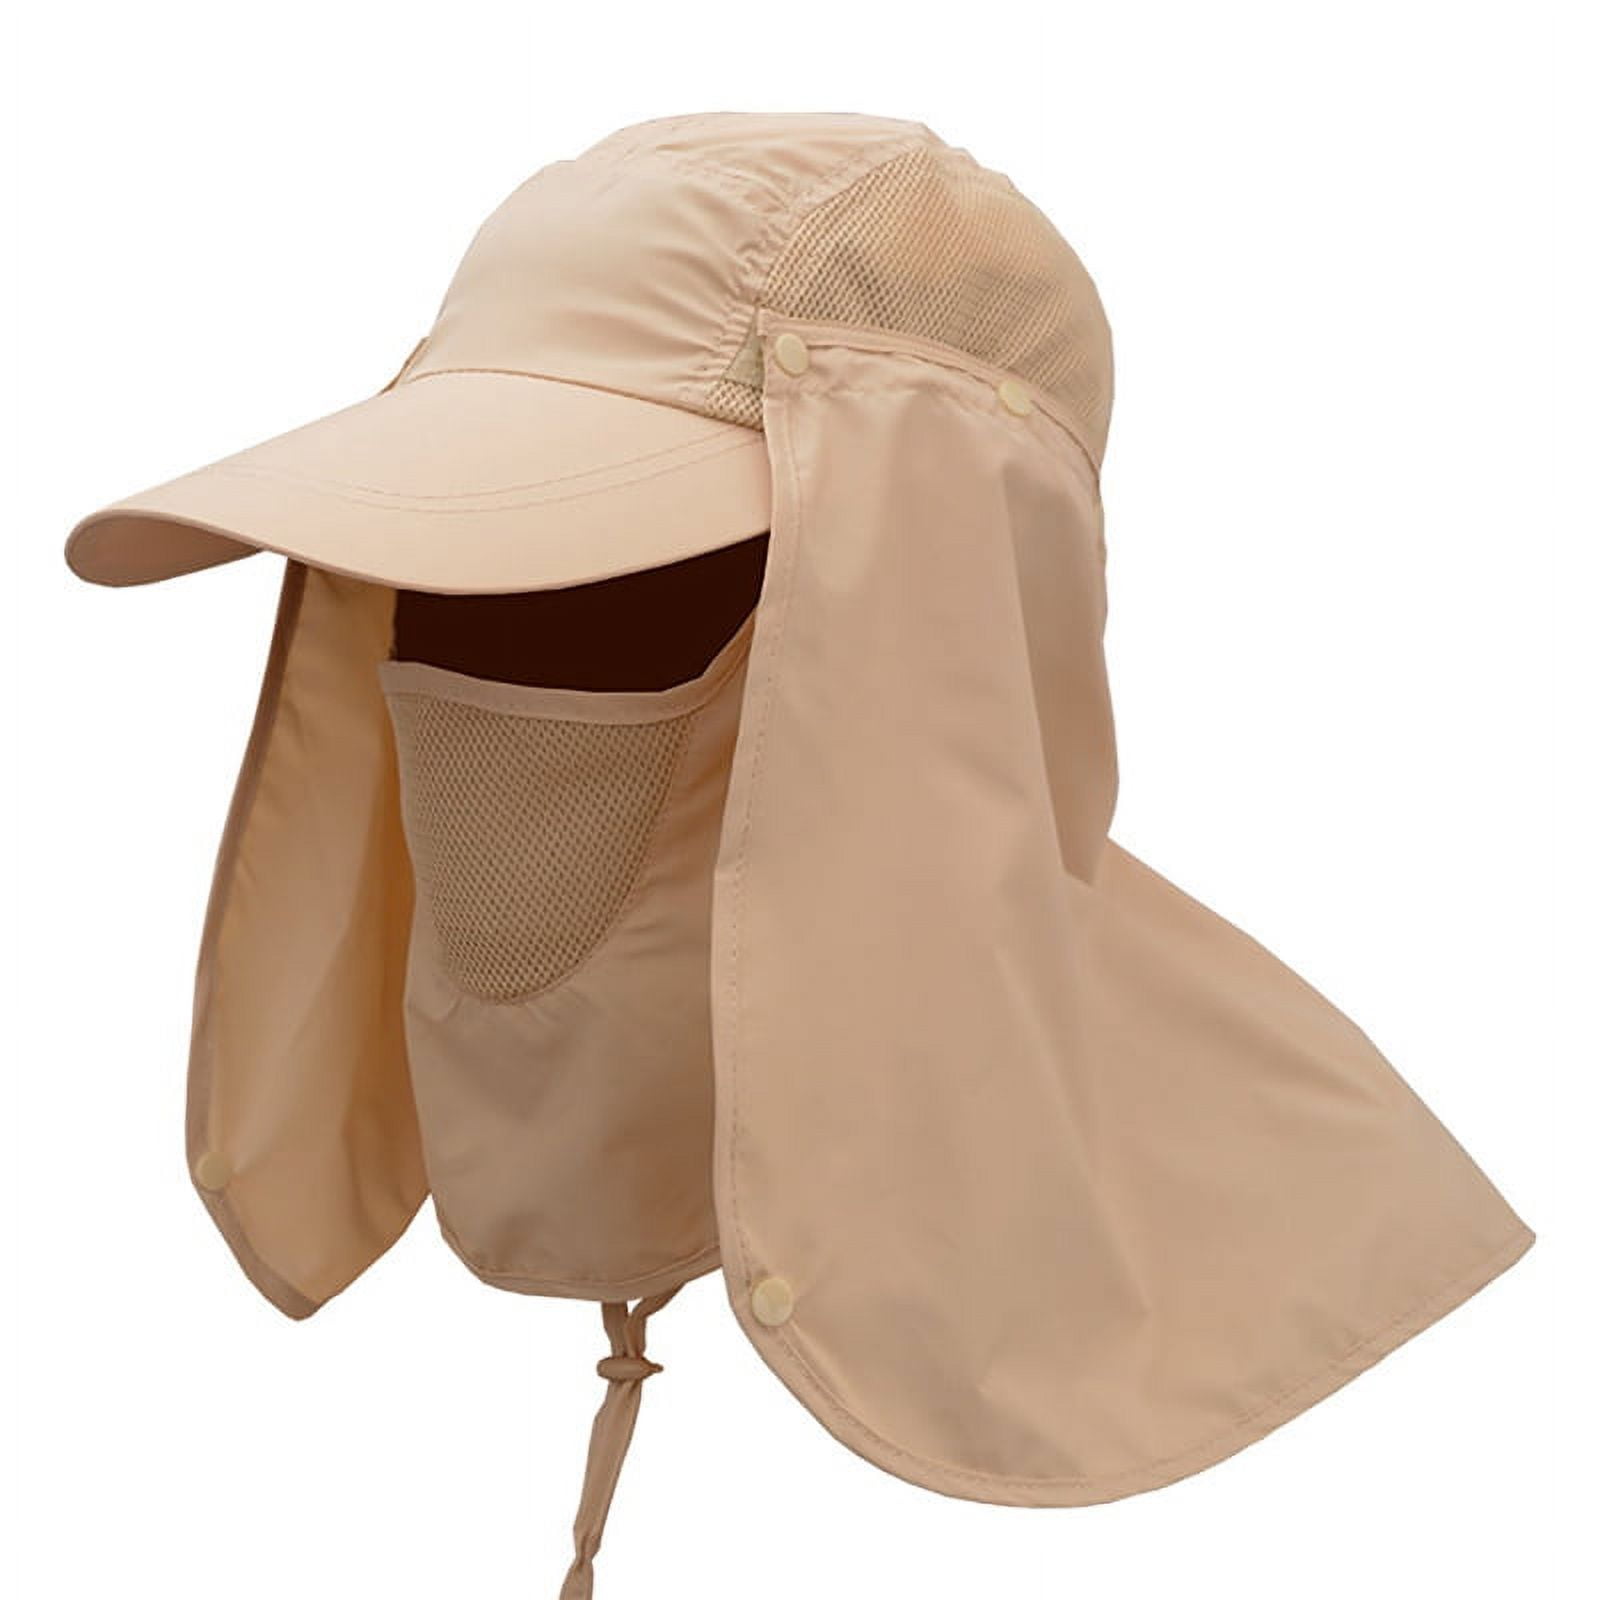 Unisex Sun Cap Fishing Hats, Outdoor 360° Sun Protection UPF 50